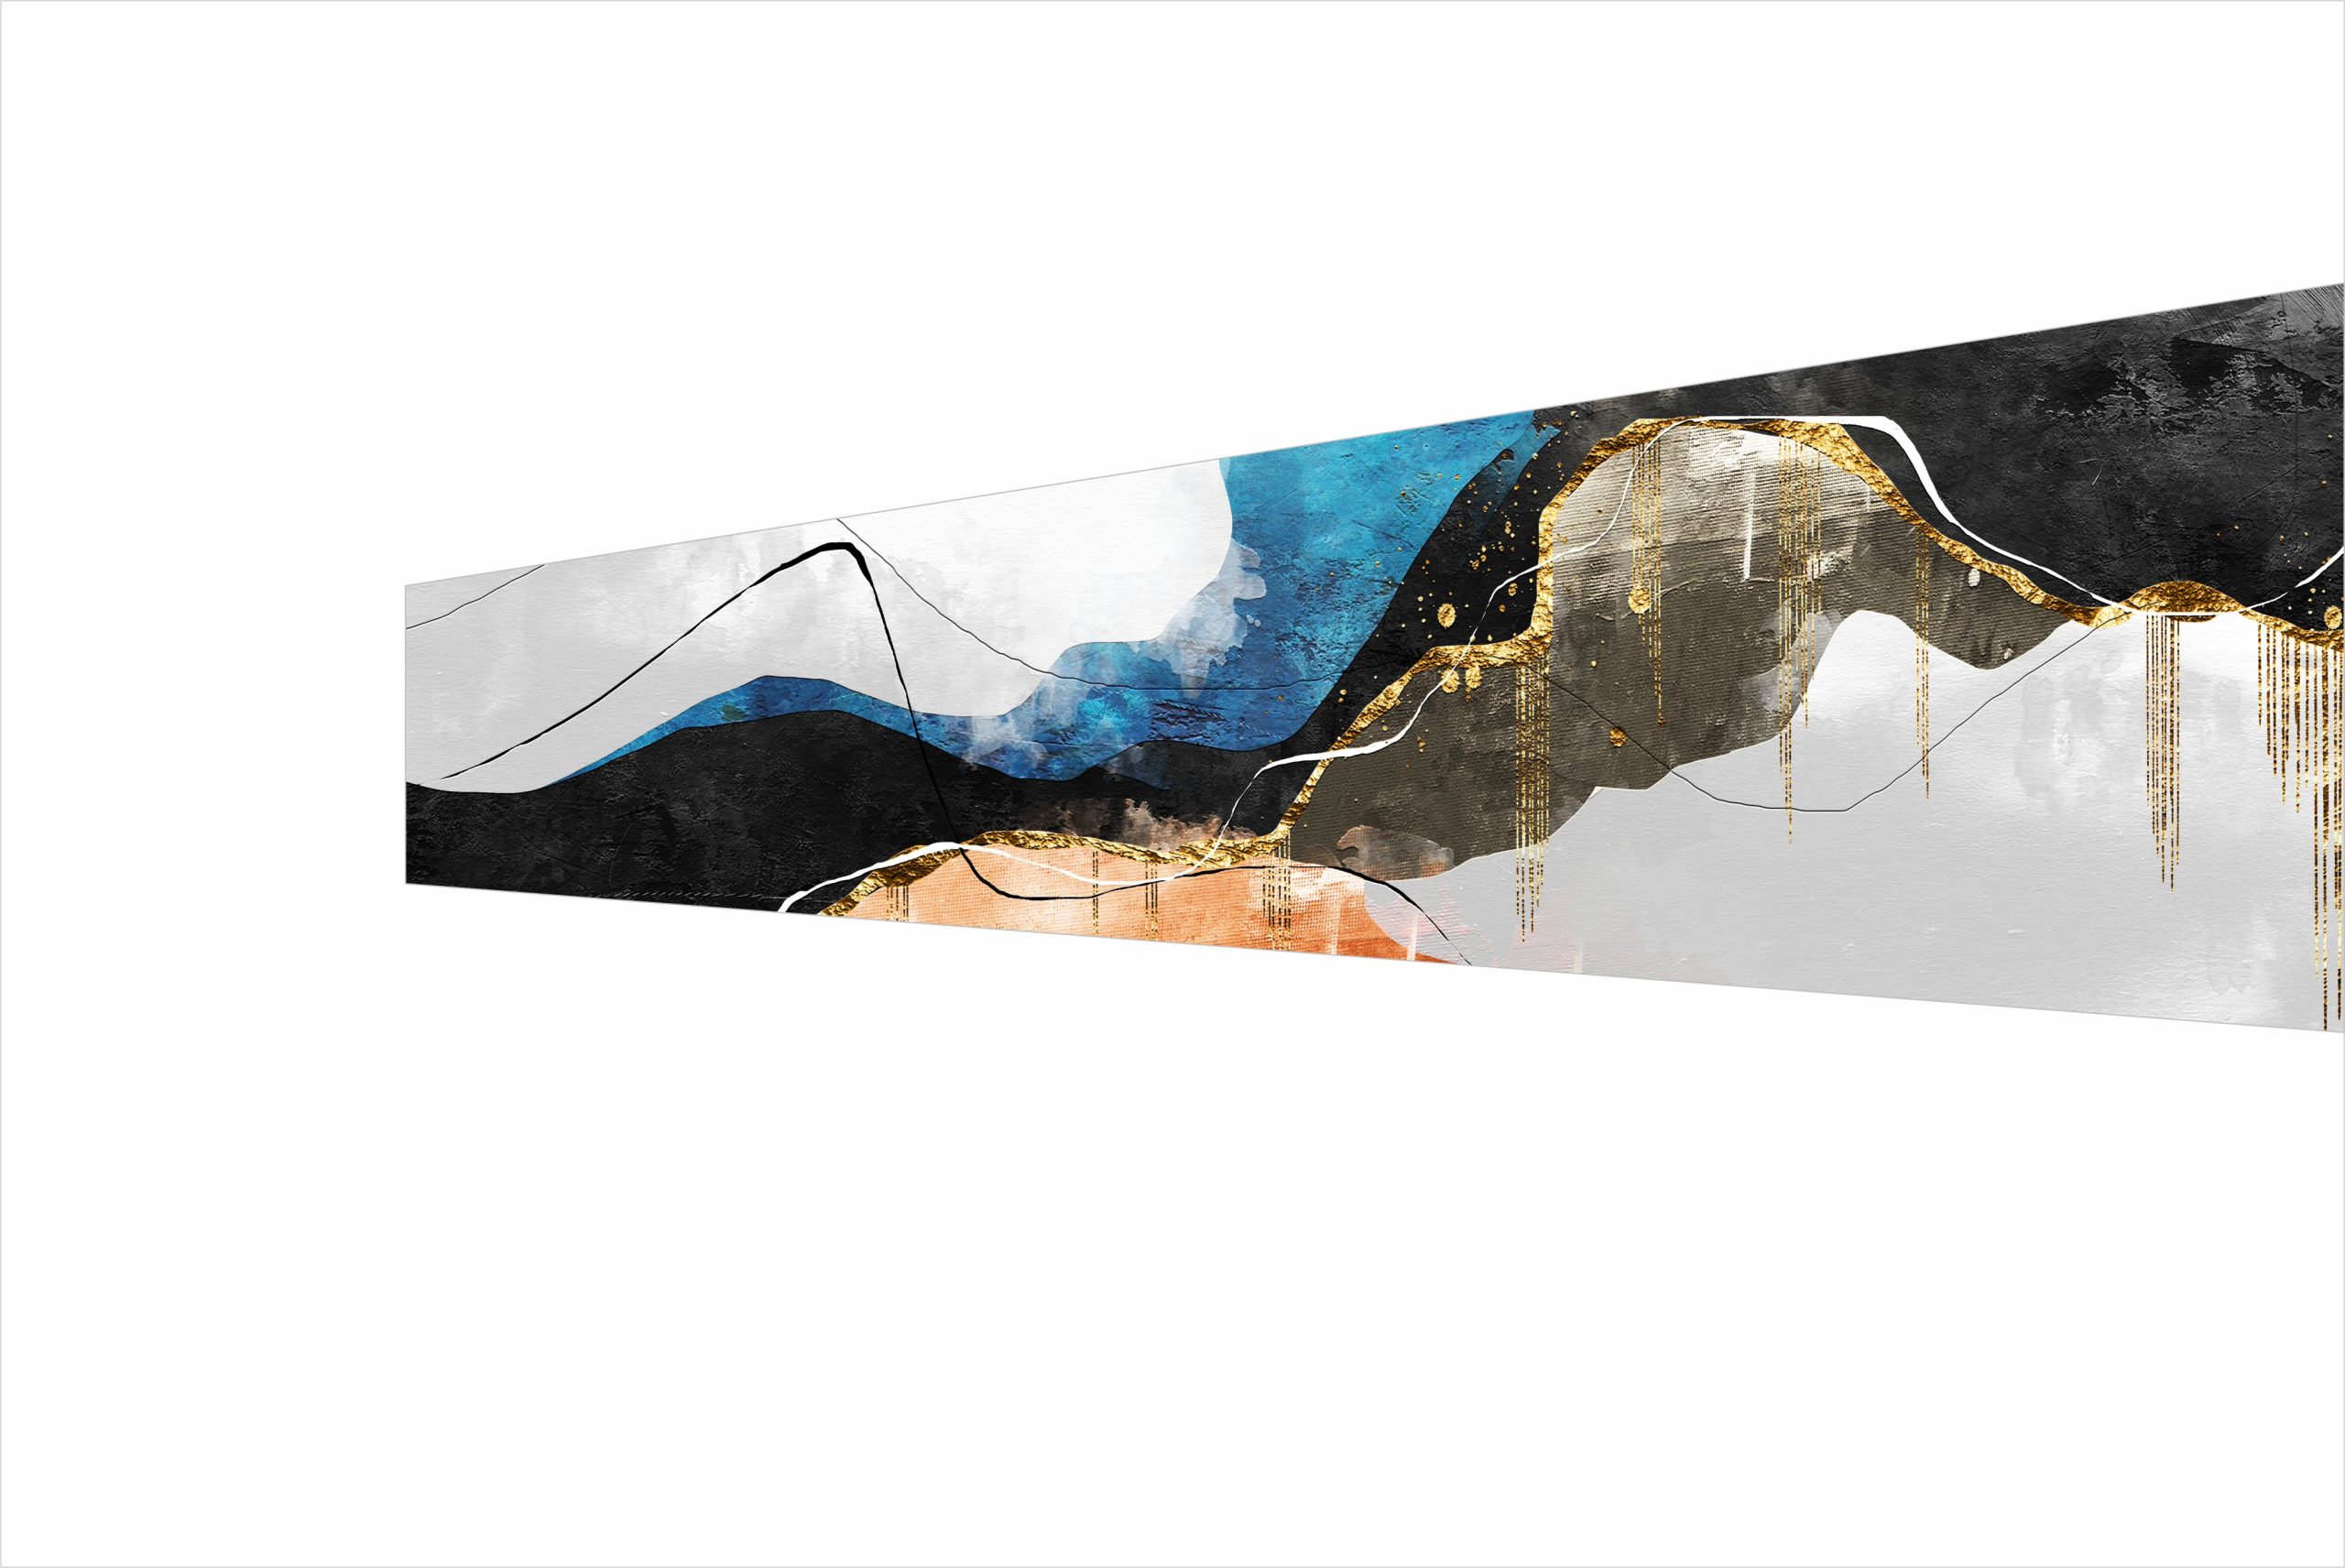 2 - Abstract Art Series Matte finish For Glass Splashbacks